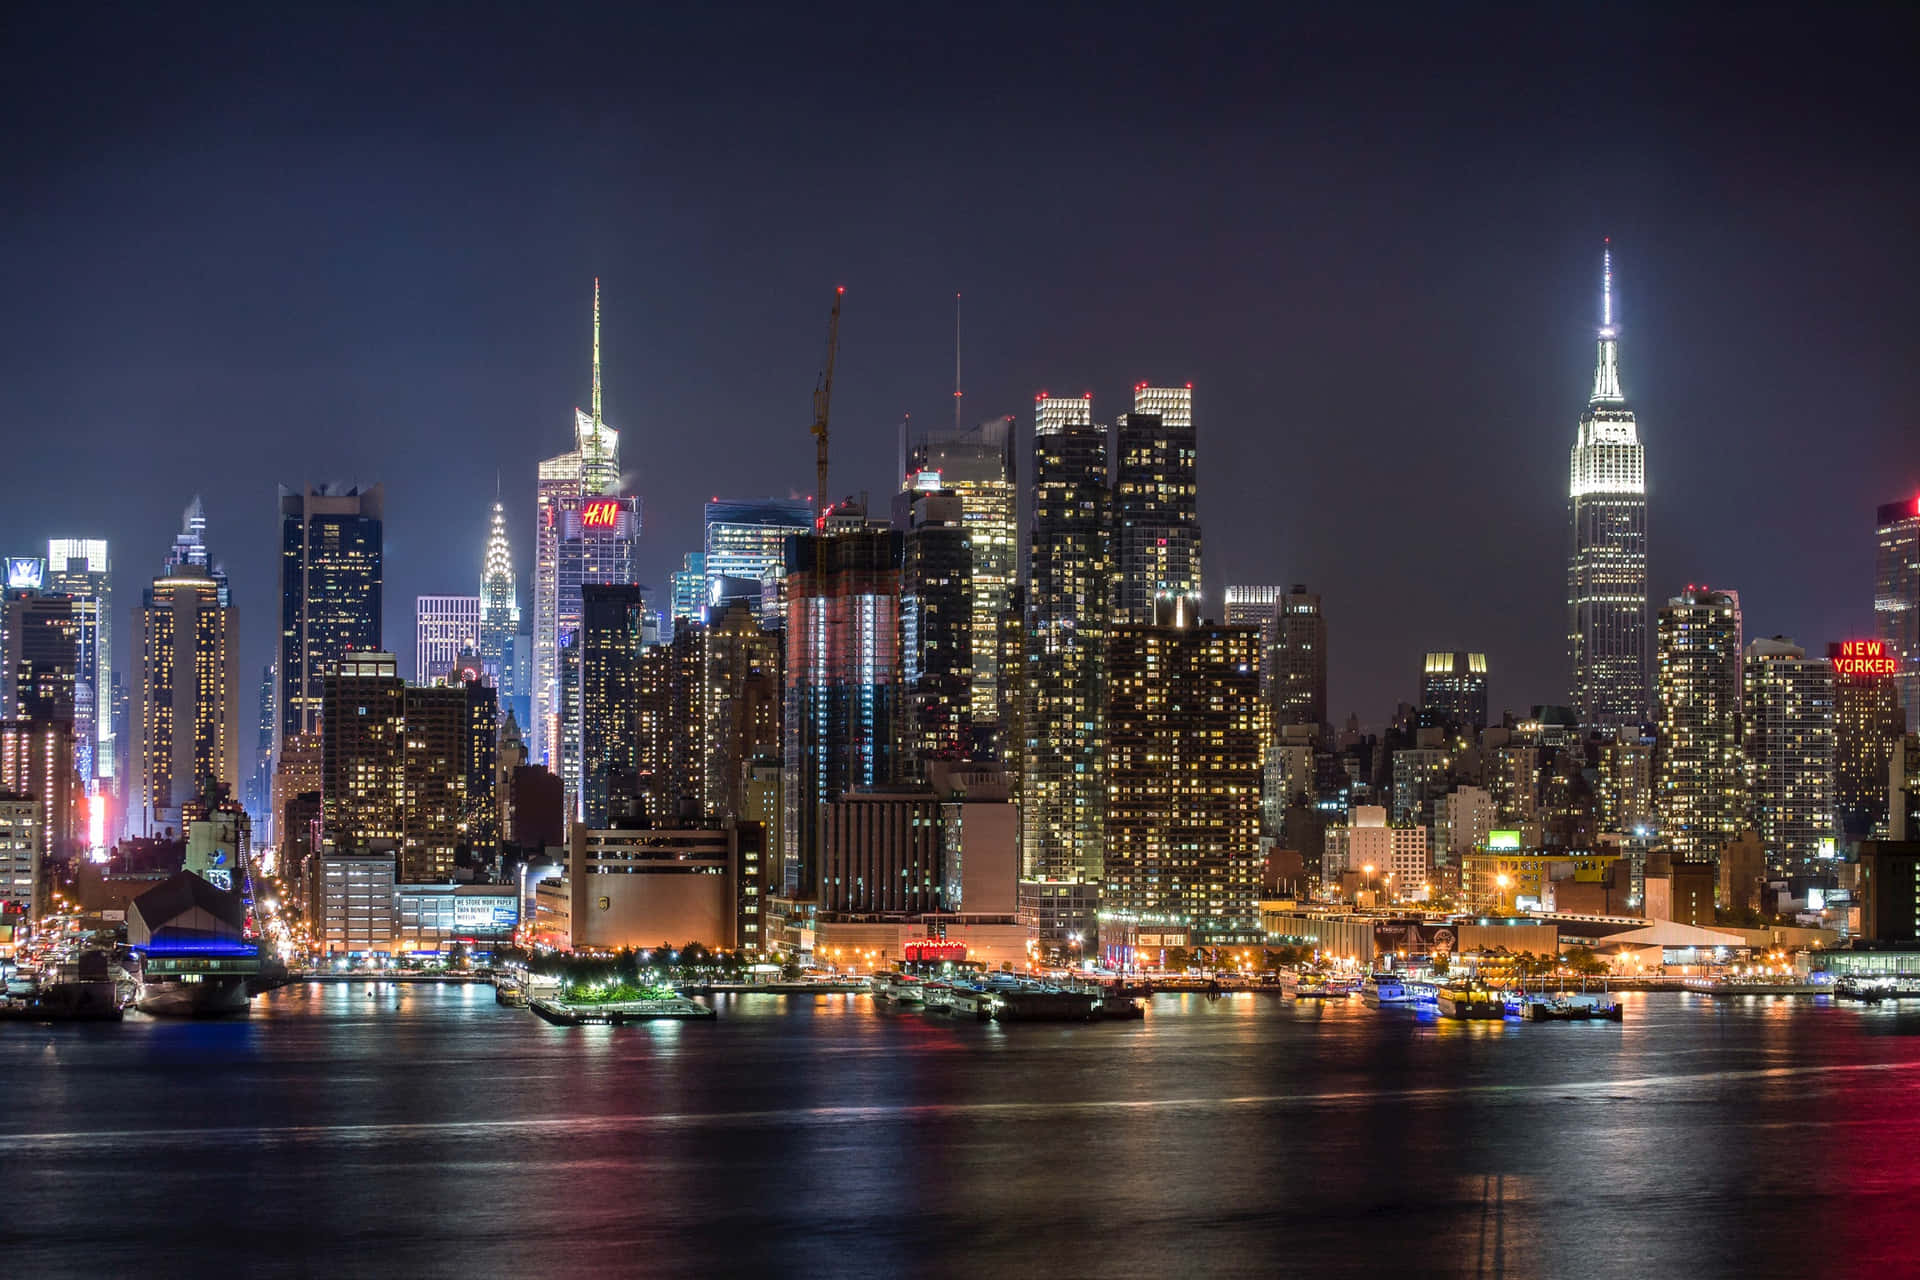 Pierbei Nacht - Das Beste Hintergrundbild Von New York.